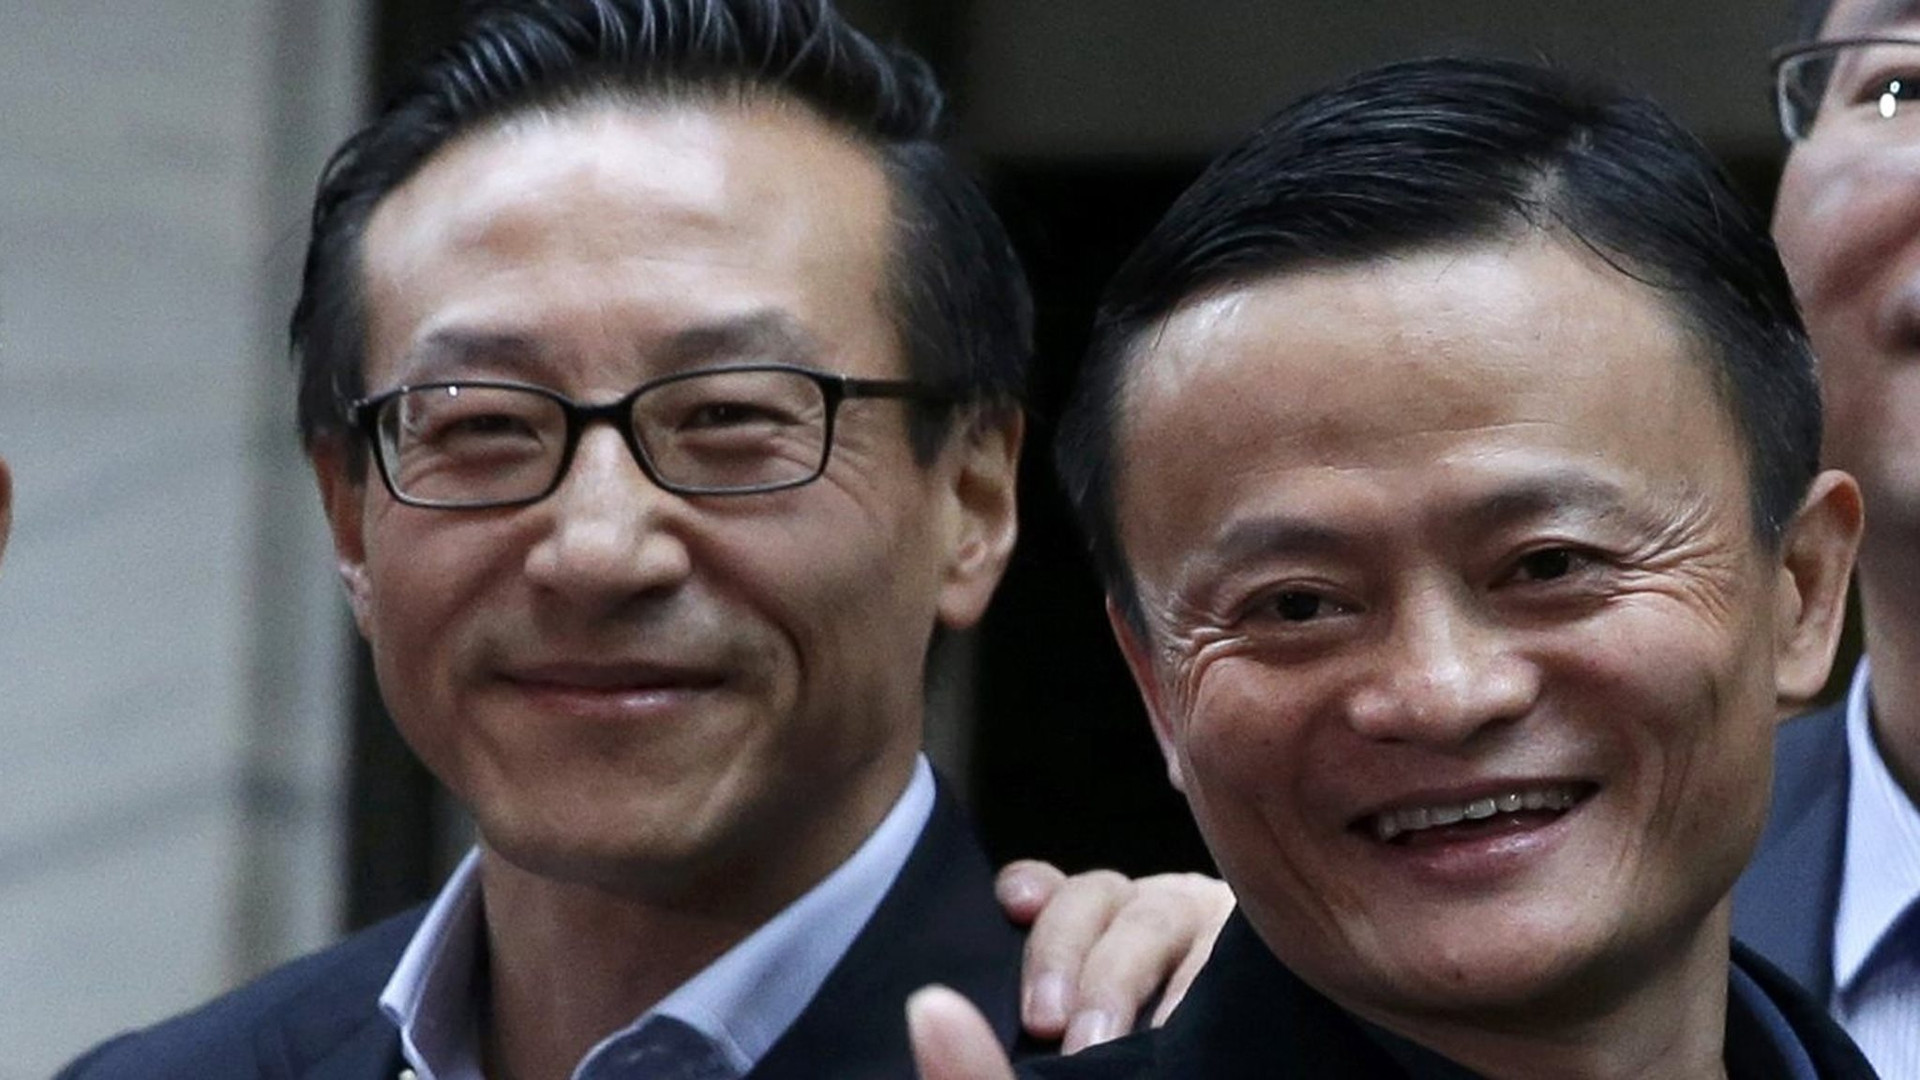 Chân dung tân Chủ tịch Alibaba: Là bạn tri kỷ của Jack Ma, từ vị trí lương 50 USD/tháng đến chiếc ghế Chủ tịch đế chế 240 tỷ USD - Ảnh 1.